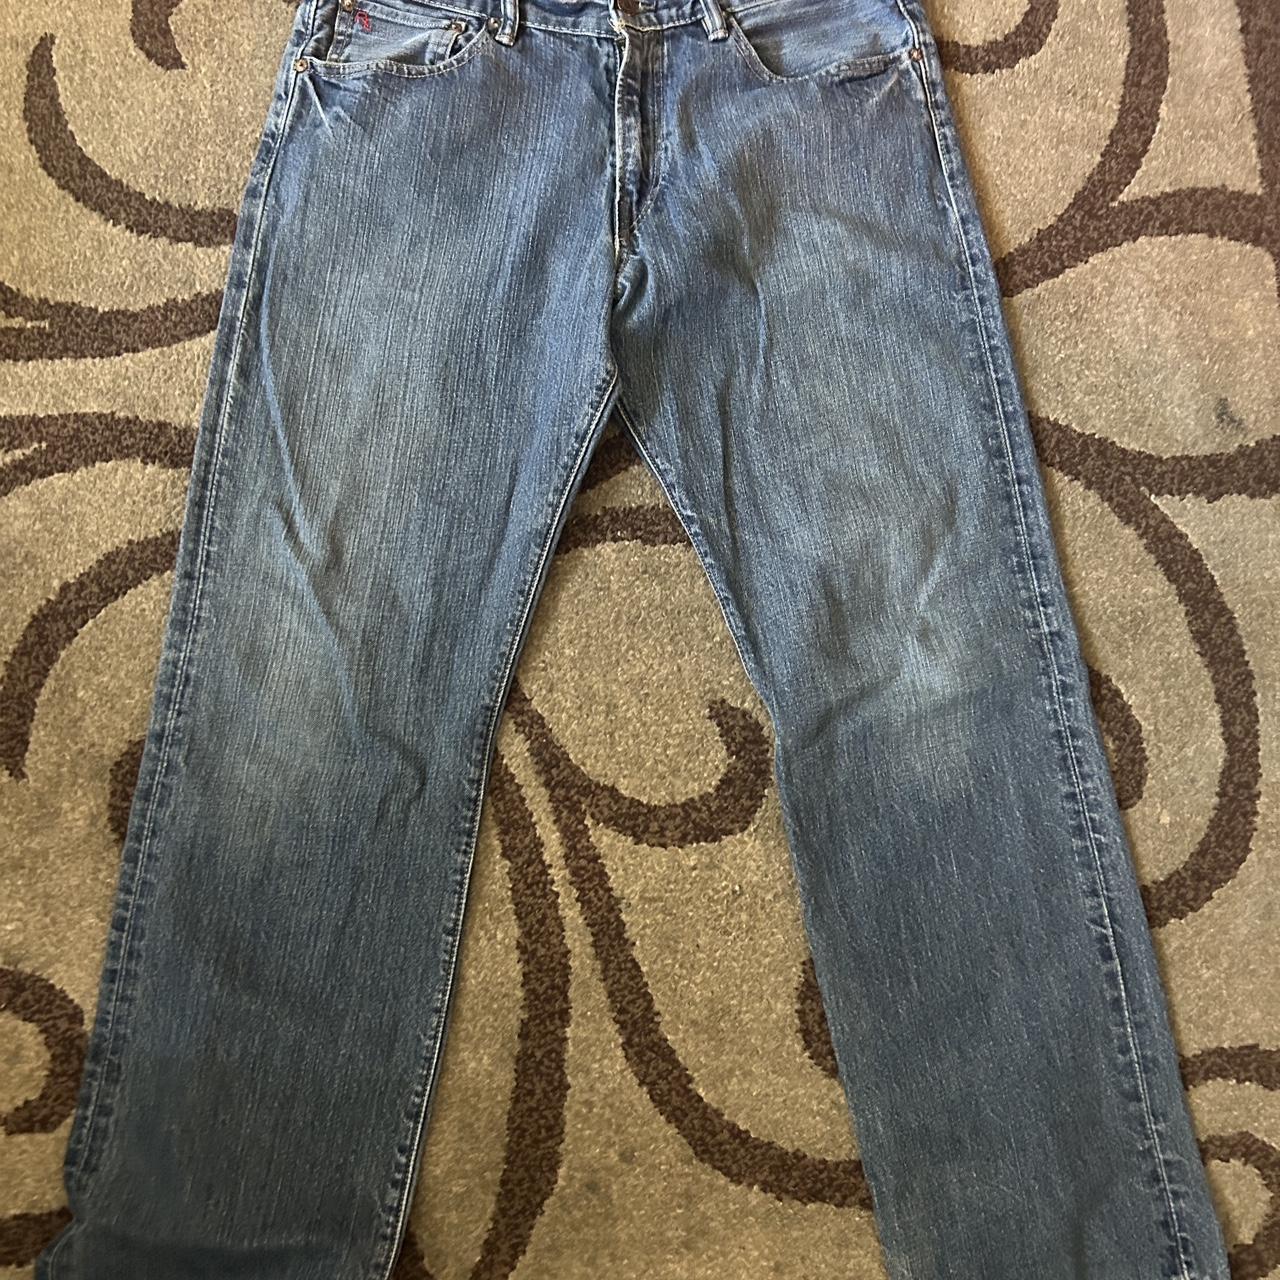 Sick vintage polo jeans - Depop